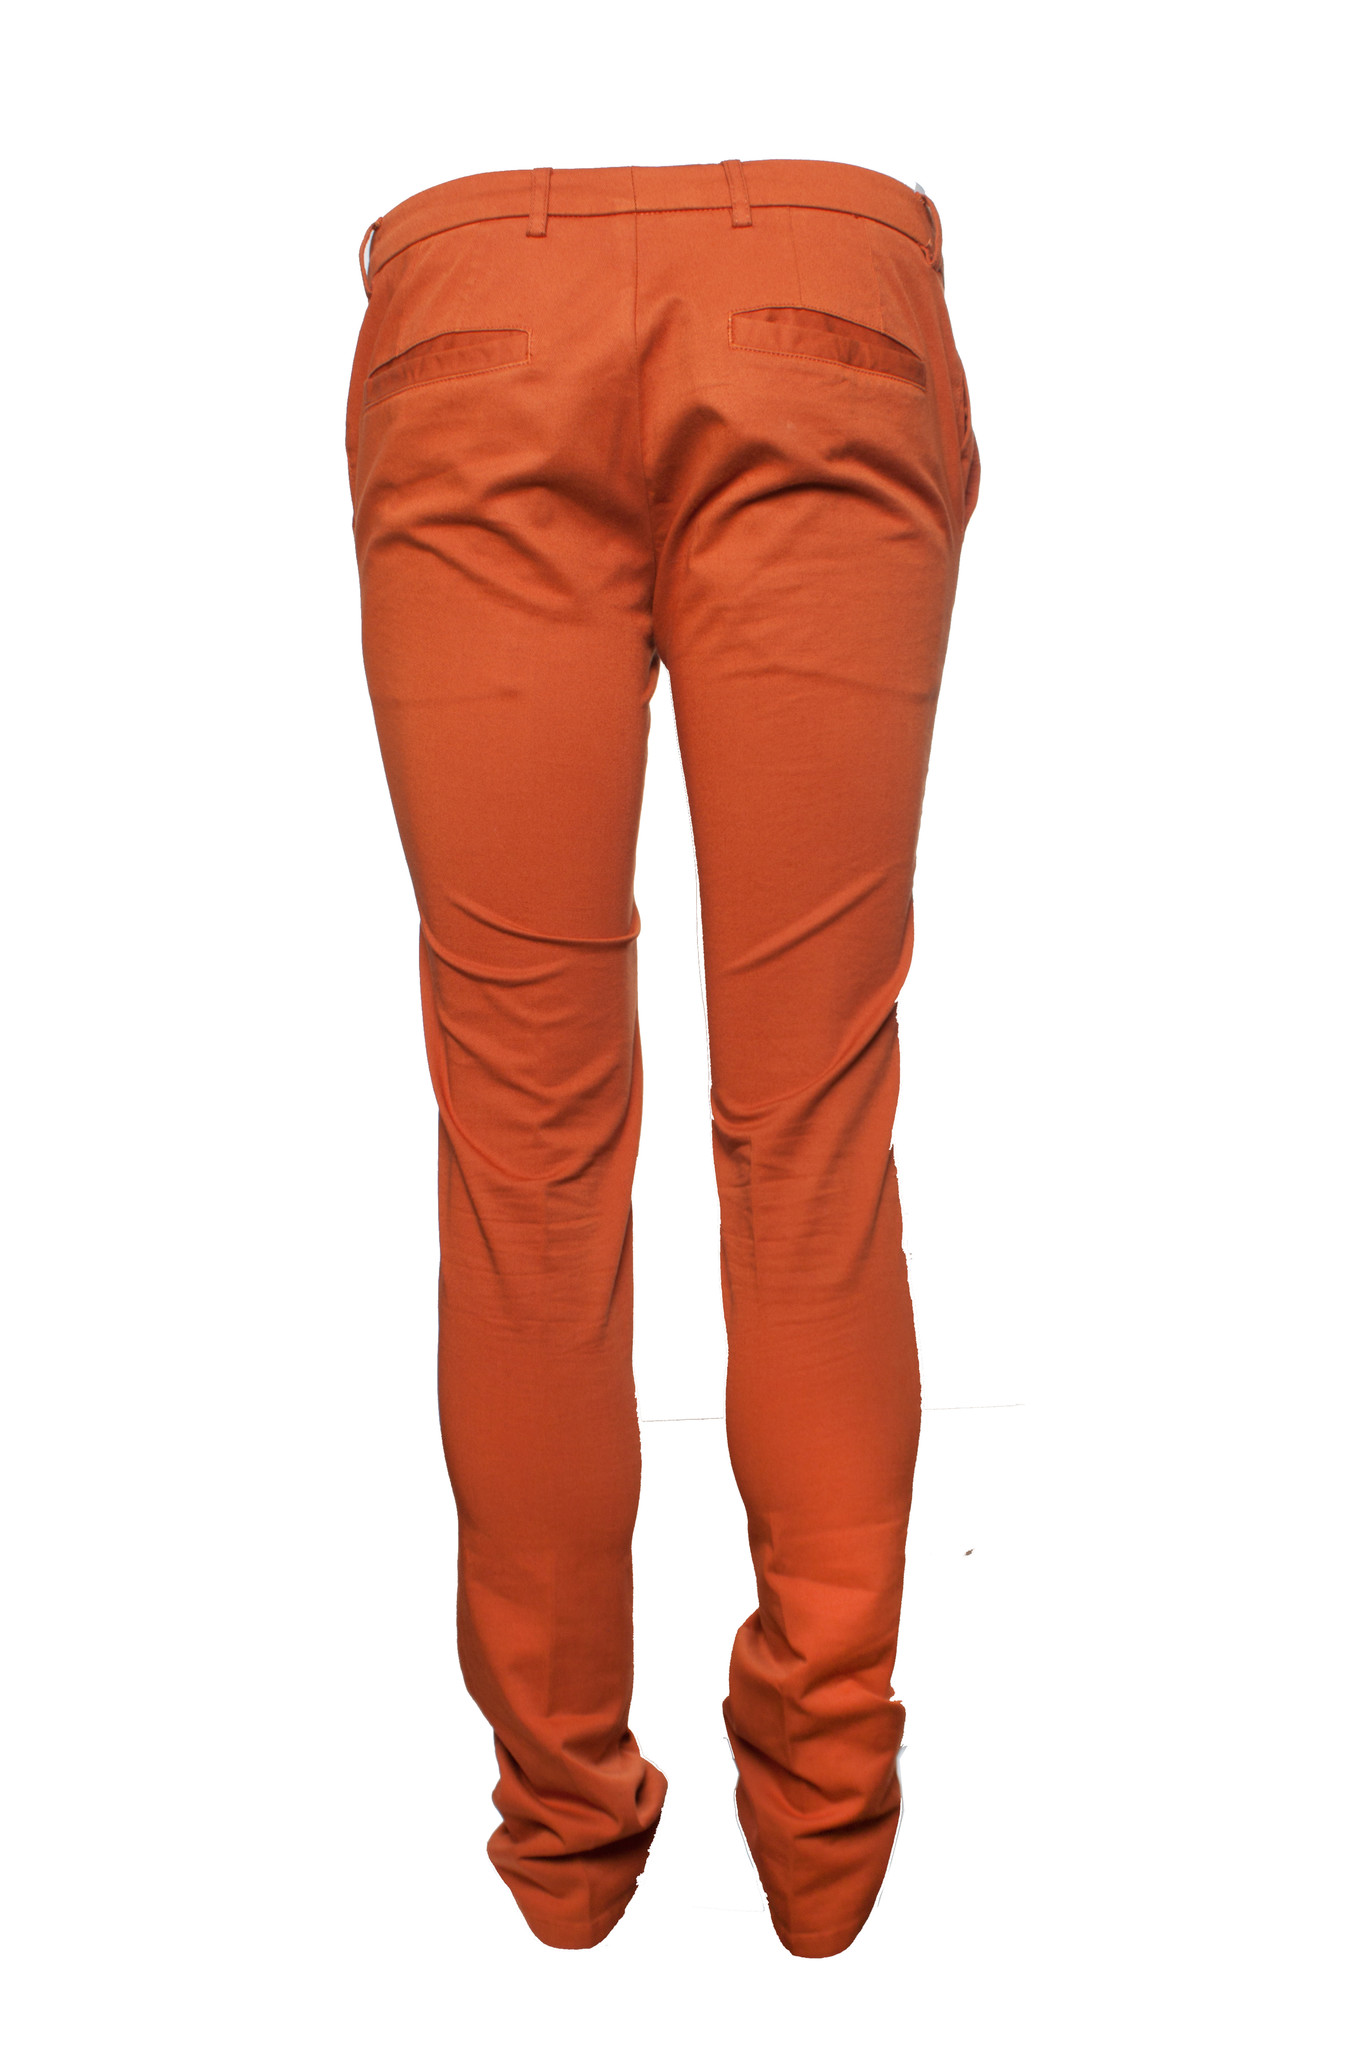 rust color pants